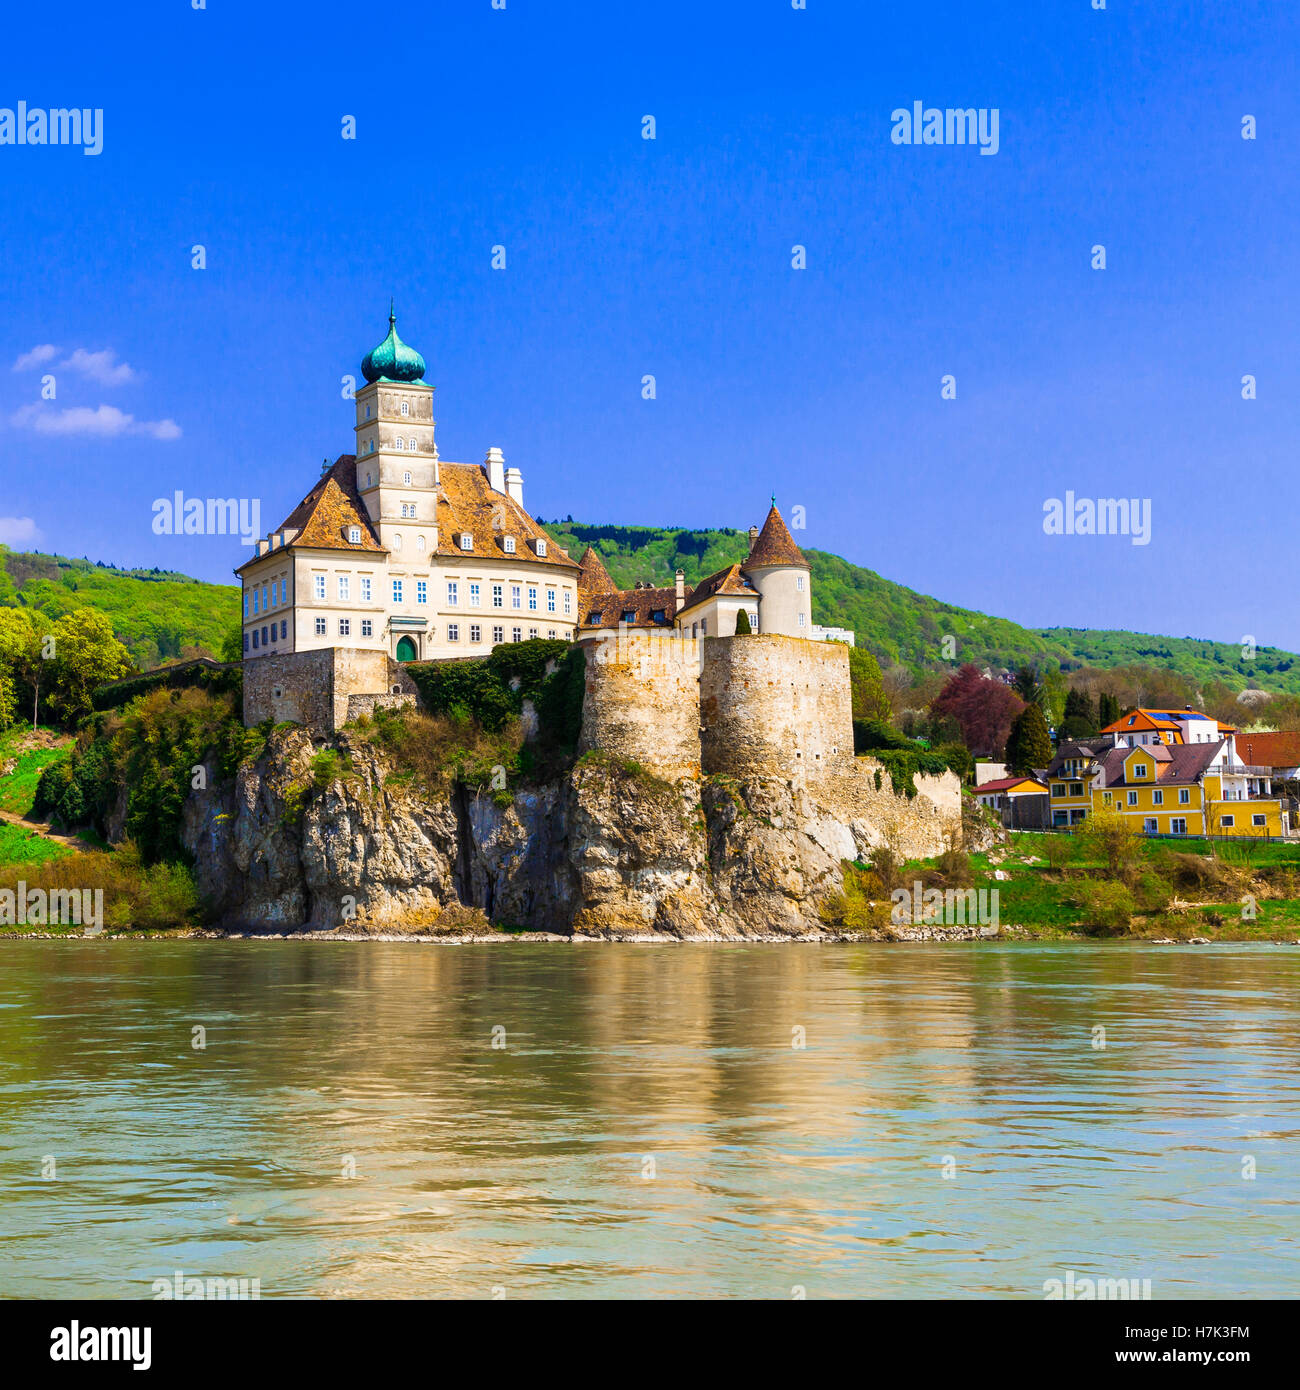 Schonbuhel,magnifique château avec vue sur la vieille forteresse, l'église et de danube,Autriche. Banque D'Images